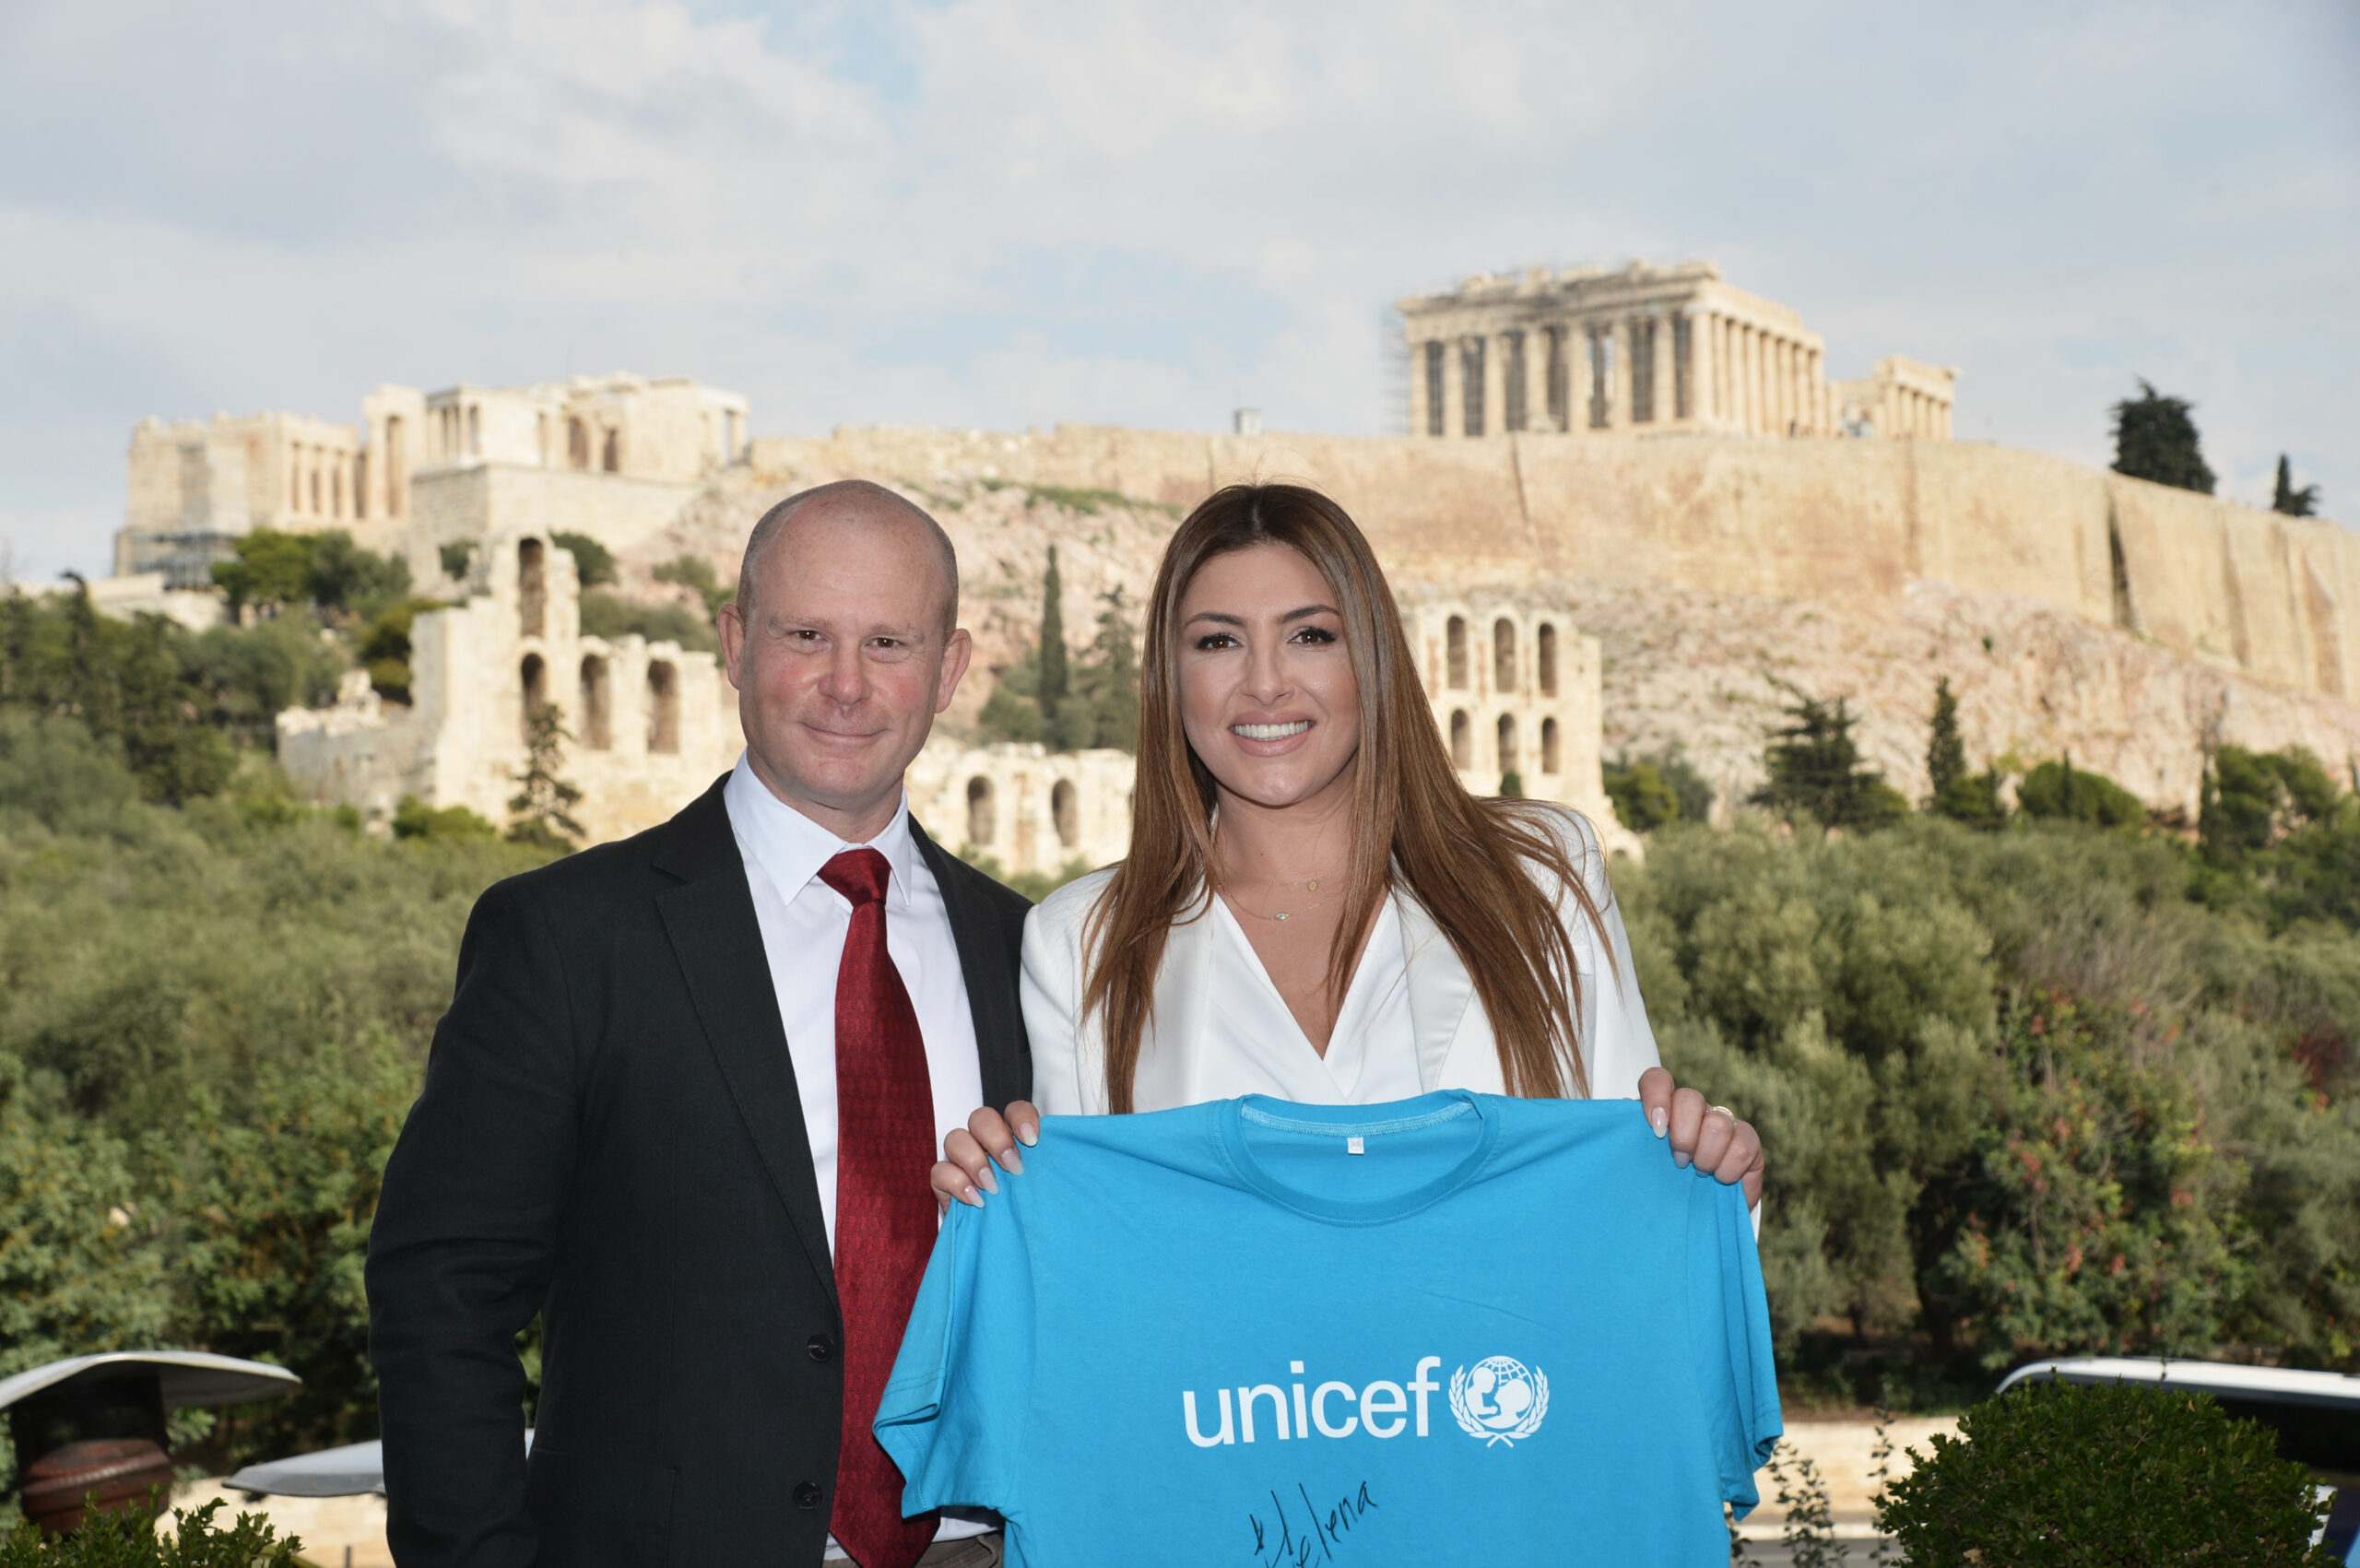 Η Έλενα Παπαρίζου ορίζεται ως η πρώτη Πρέσβειρα Καλής Θελήσεως της UNICEF στην Ελλάδα